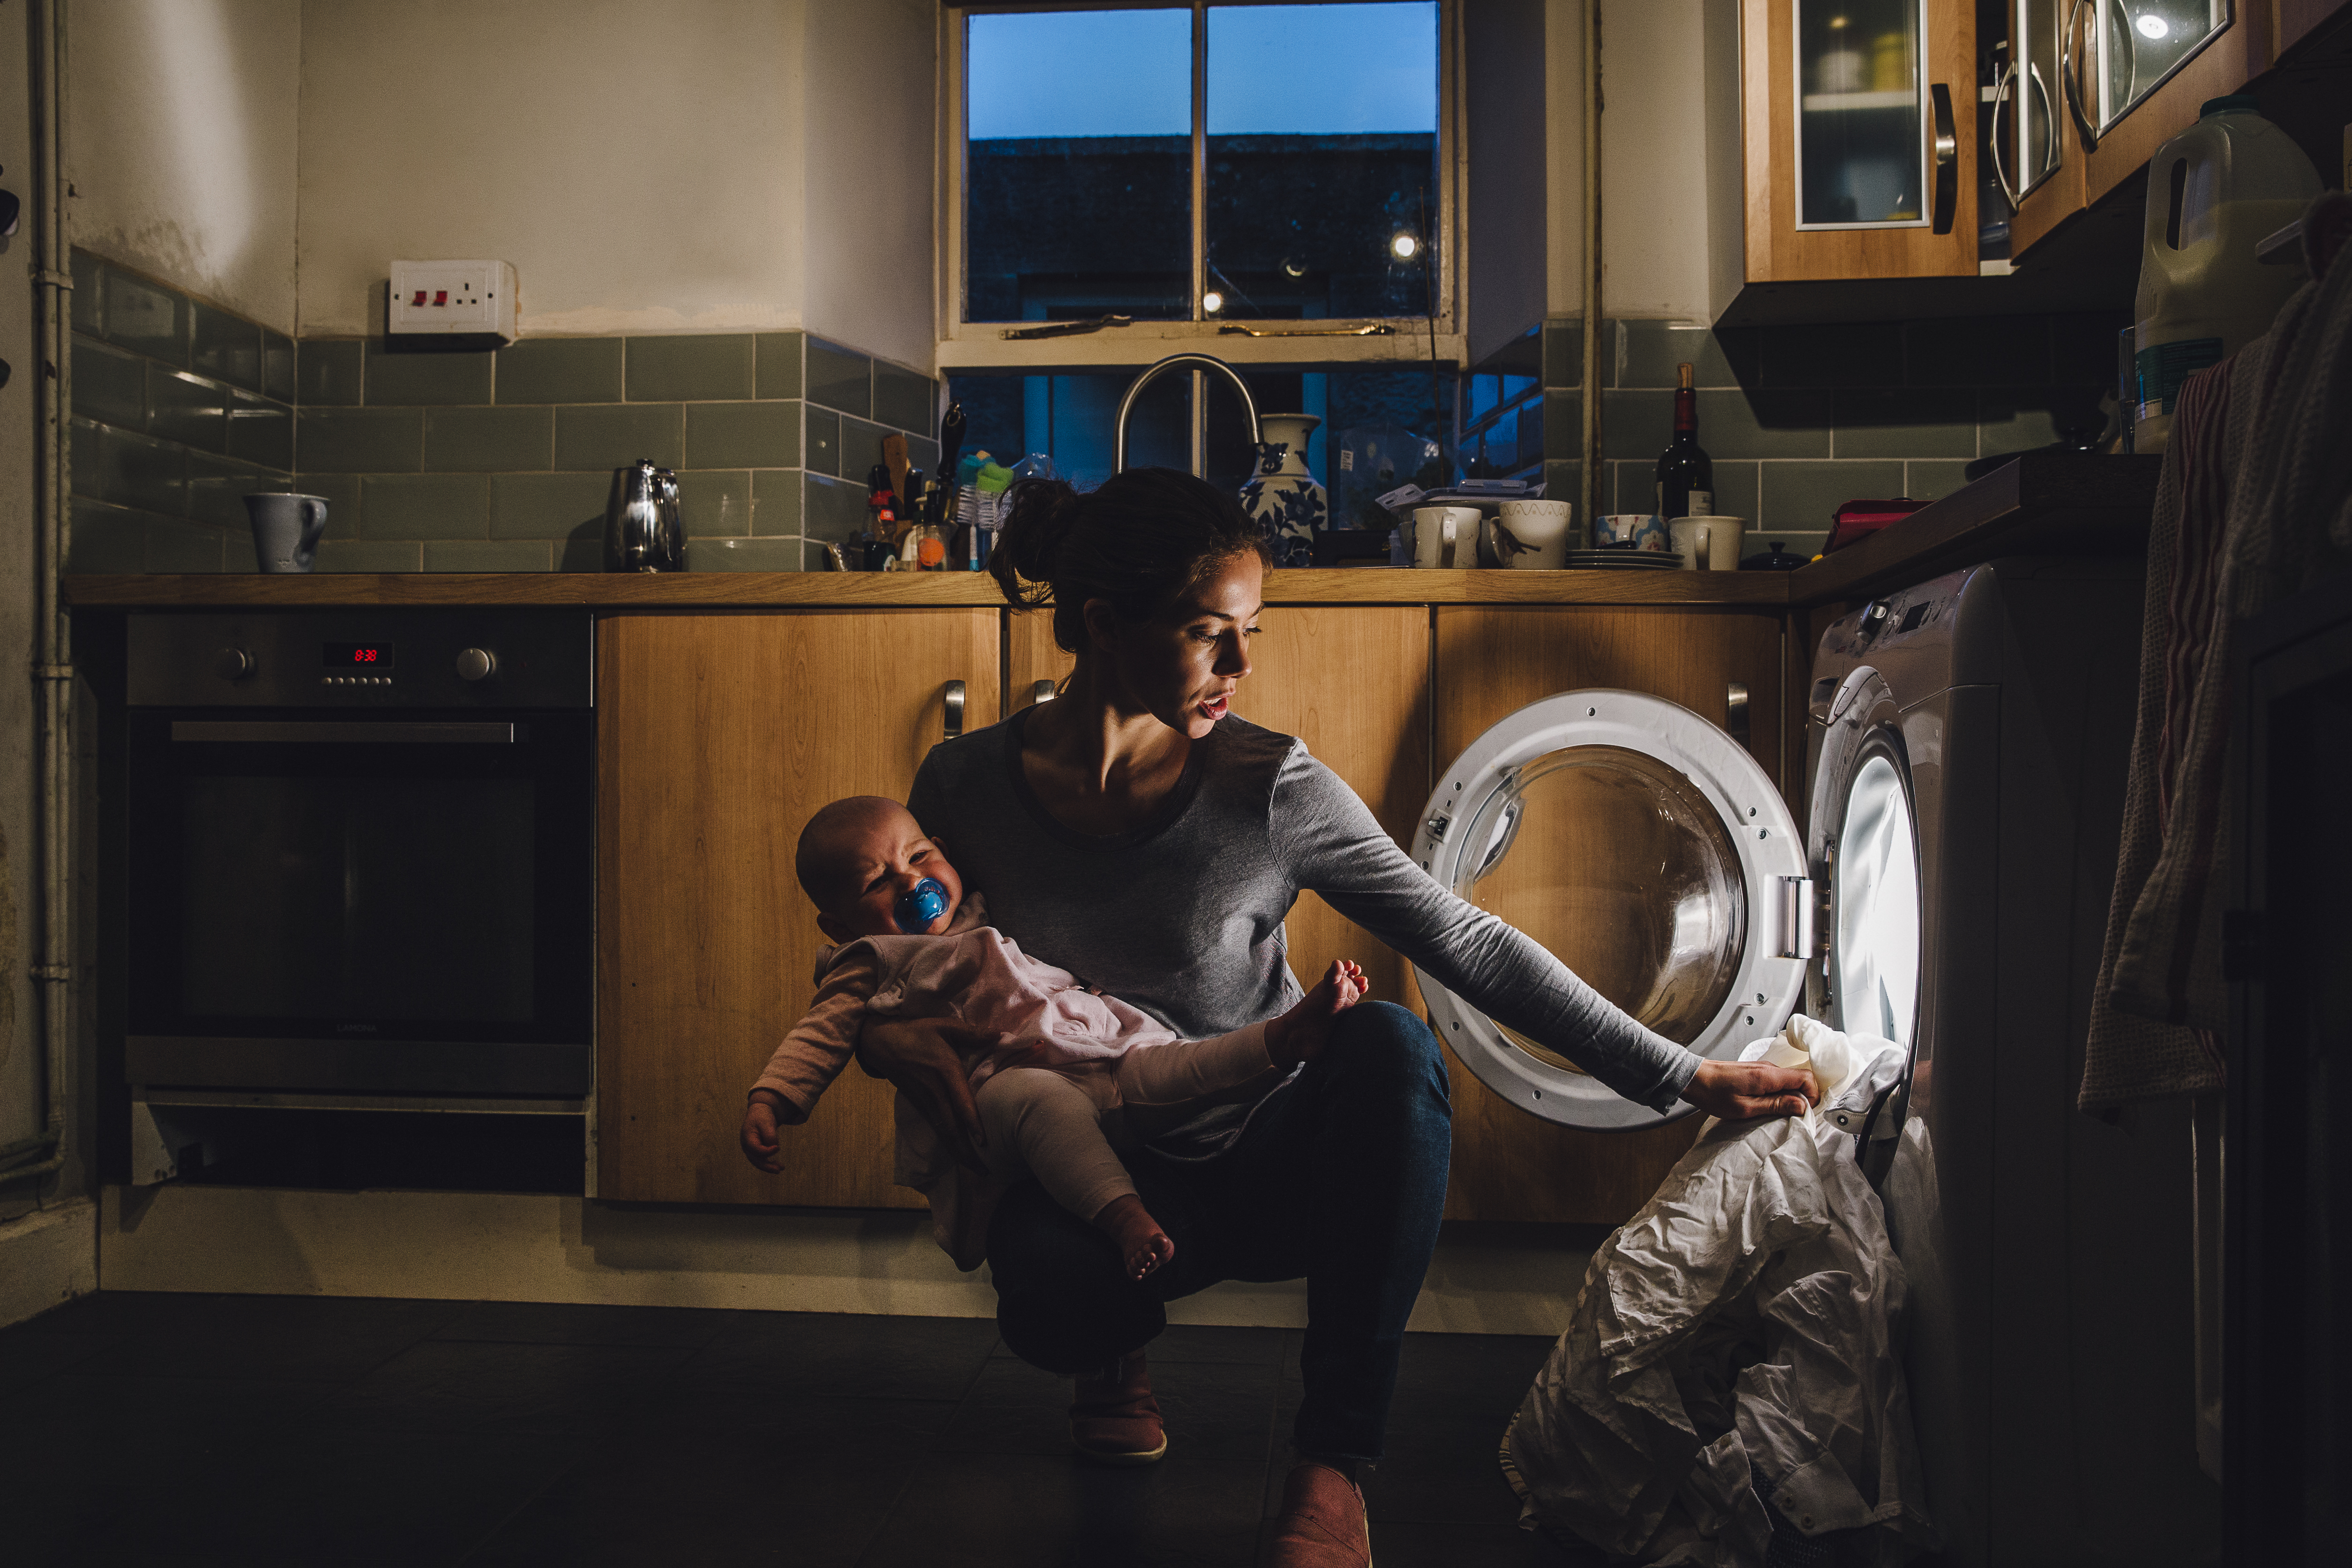 Saúde mental materna Cercada de estigmas, mãe que fica em casa sofre sozinha e pode até adoecer Bebe.br